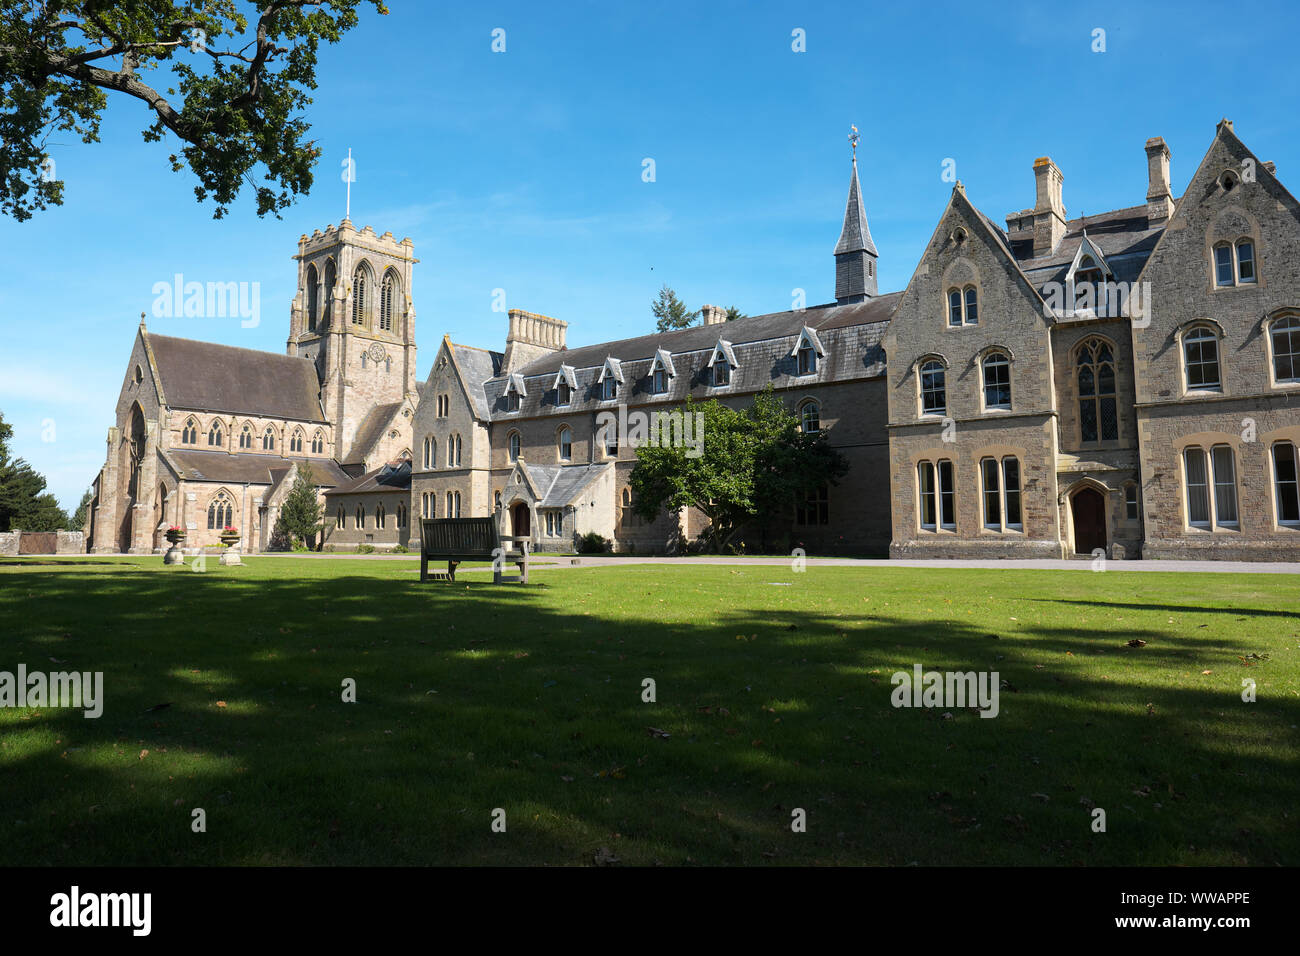 Belmont Abbey außerhalb von Hereford, Herefordshire, UK ist eine Katholische Benediktinerkloster. Stockfoto